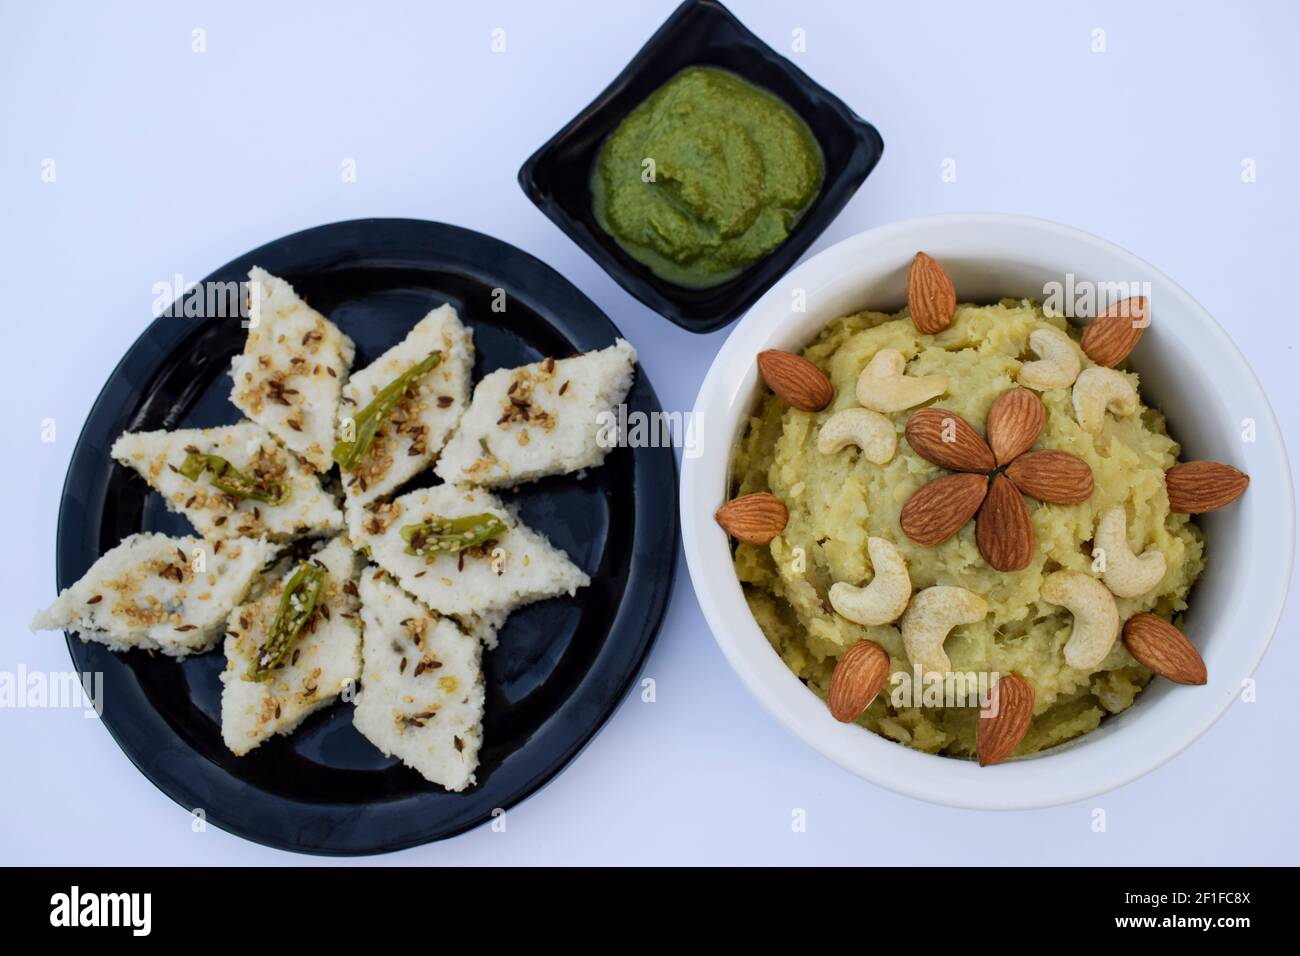 Faradi dhkola, Shakarkandi halwa, green mint coriander chutney eaten during hindi fasting days like ekdasi, mahashivratri, vrat, pooja, religious beli Stock Photo